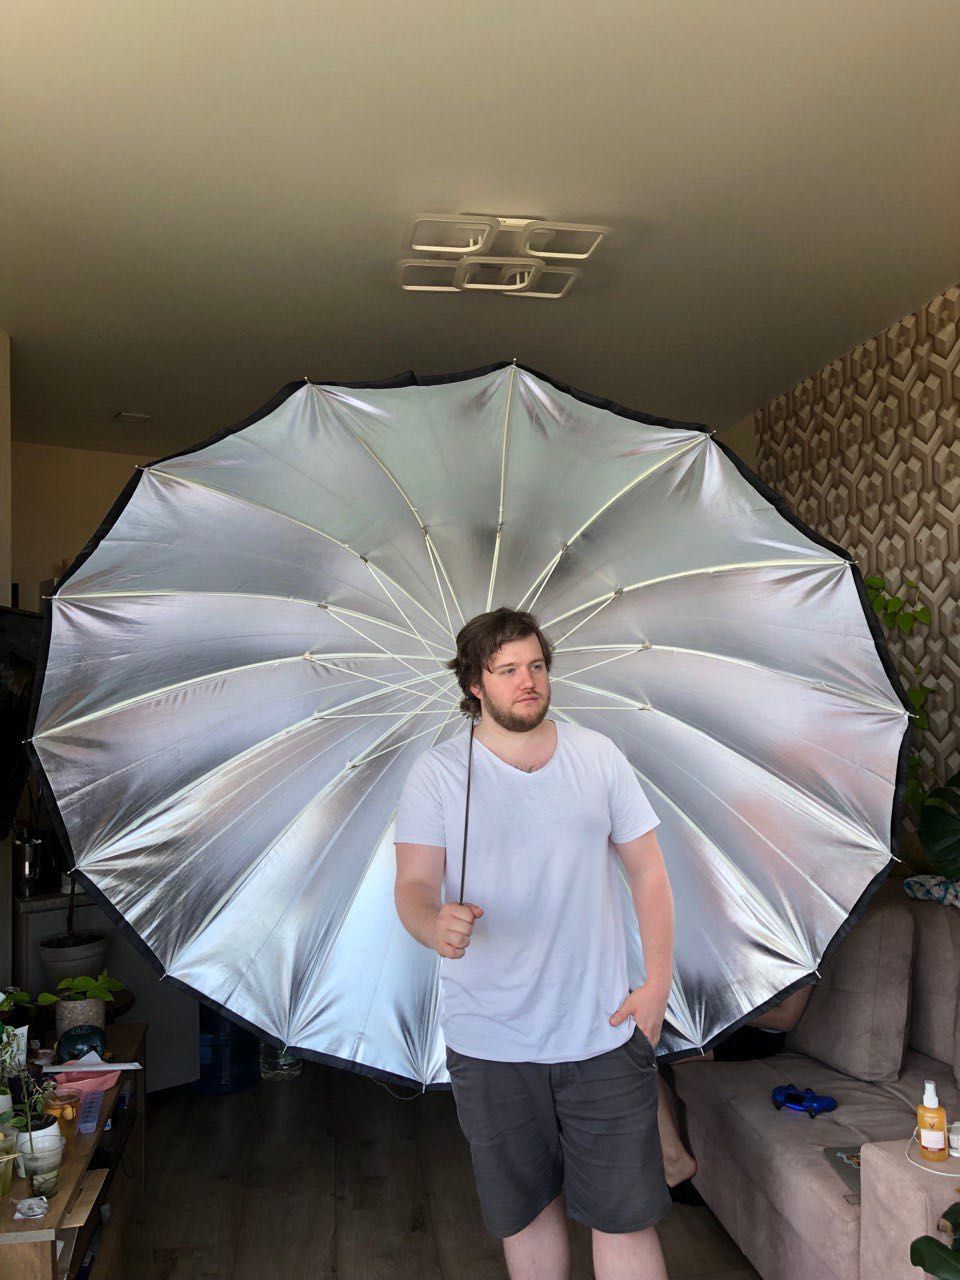 Flashpoint 16-Rib 86 Inch Parabolic Silver Umbrella -7 Feet 220см